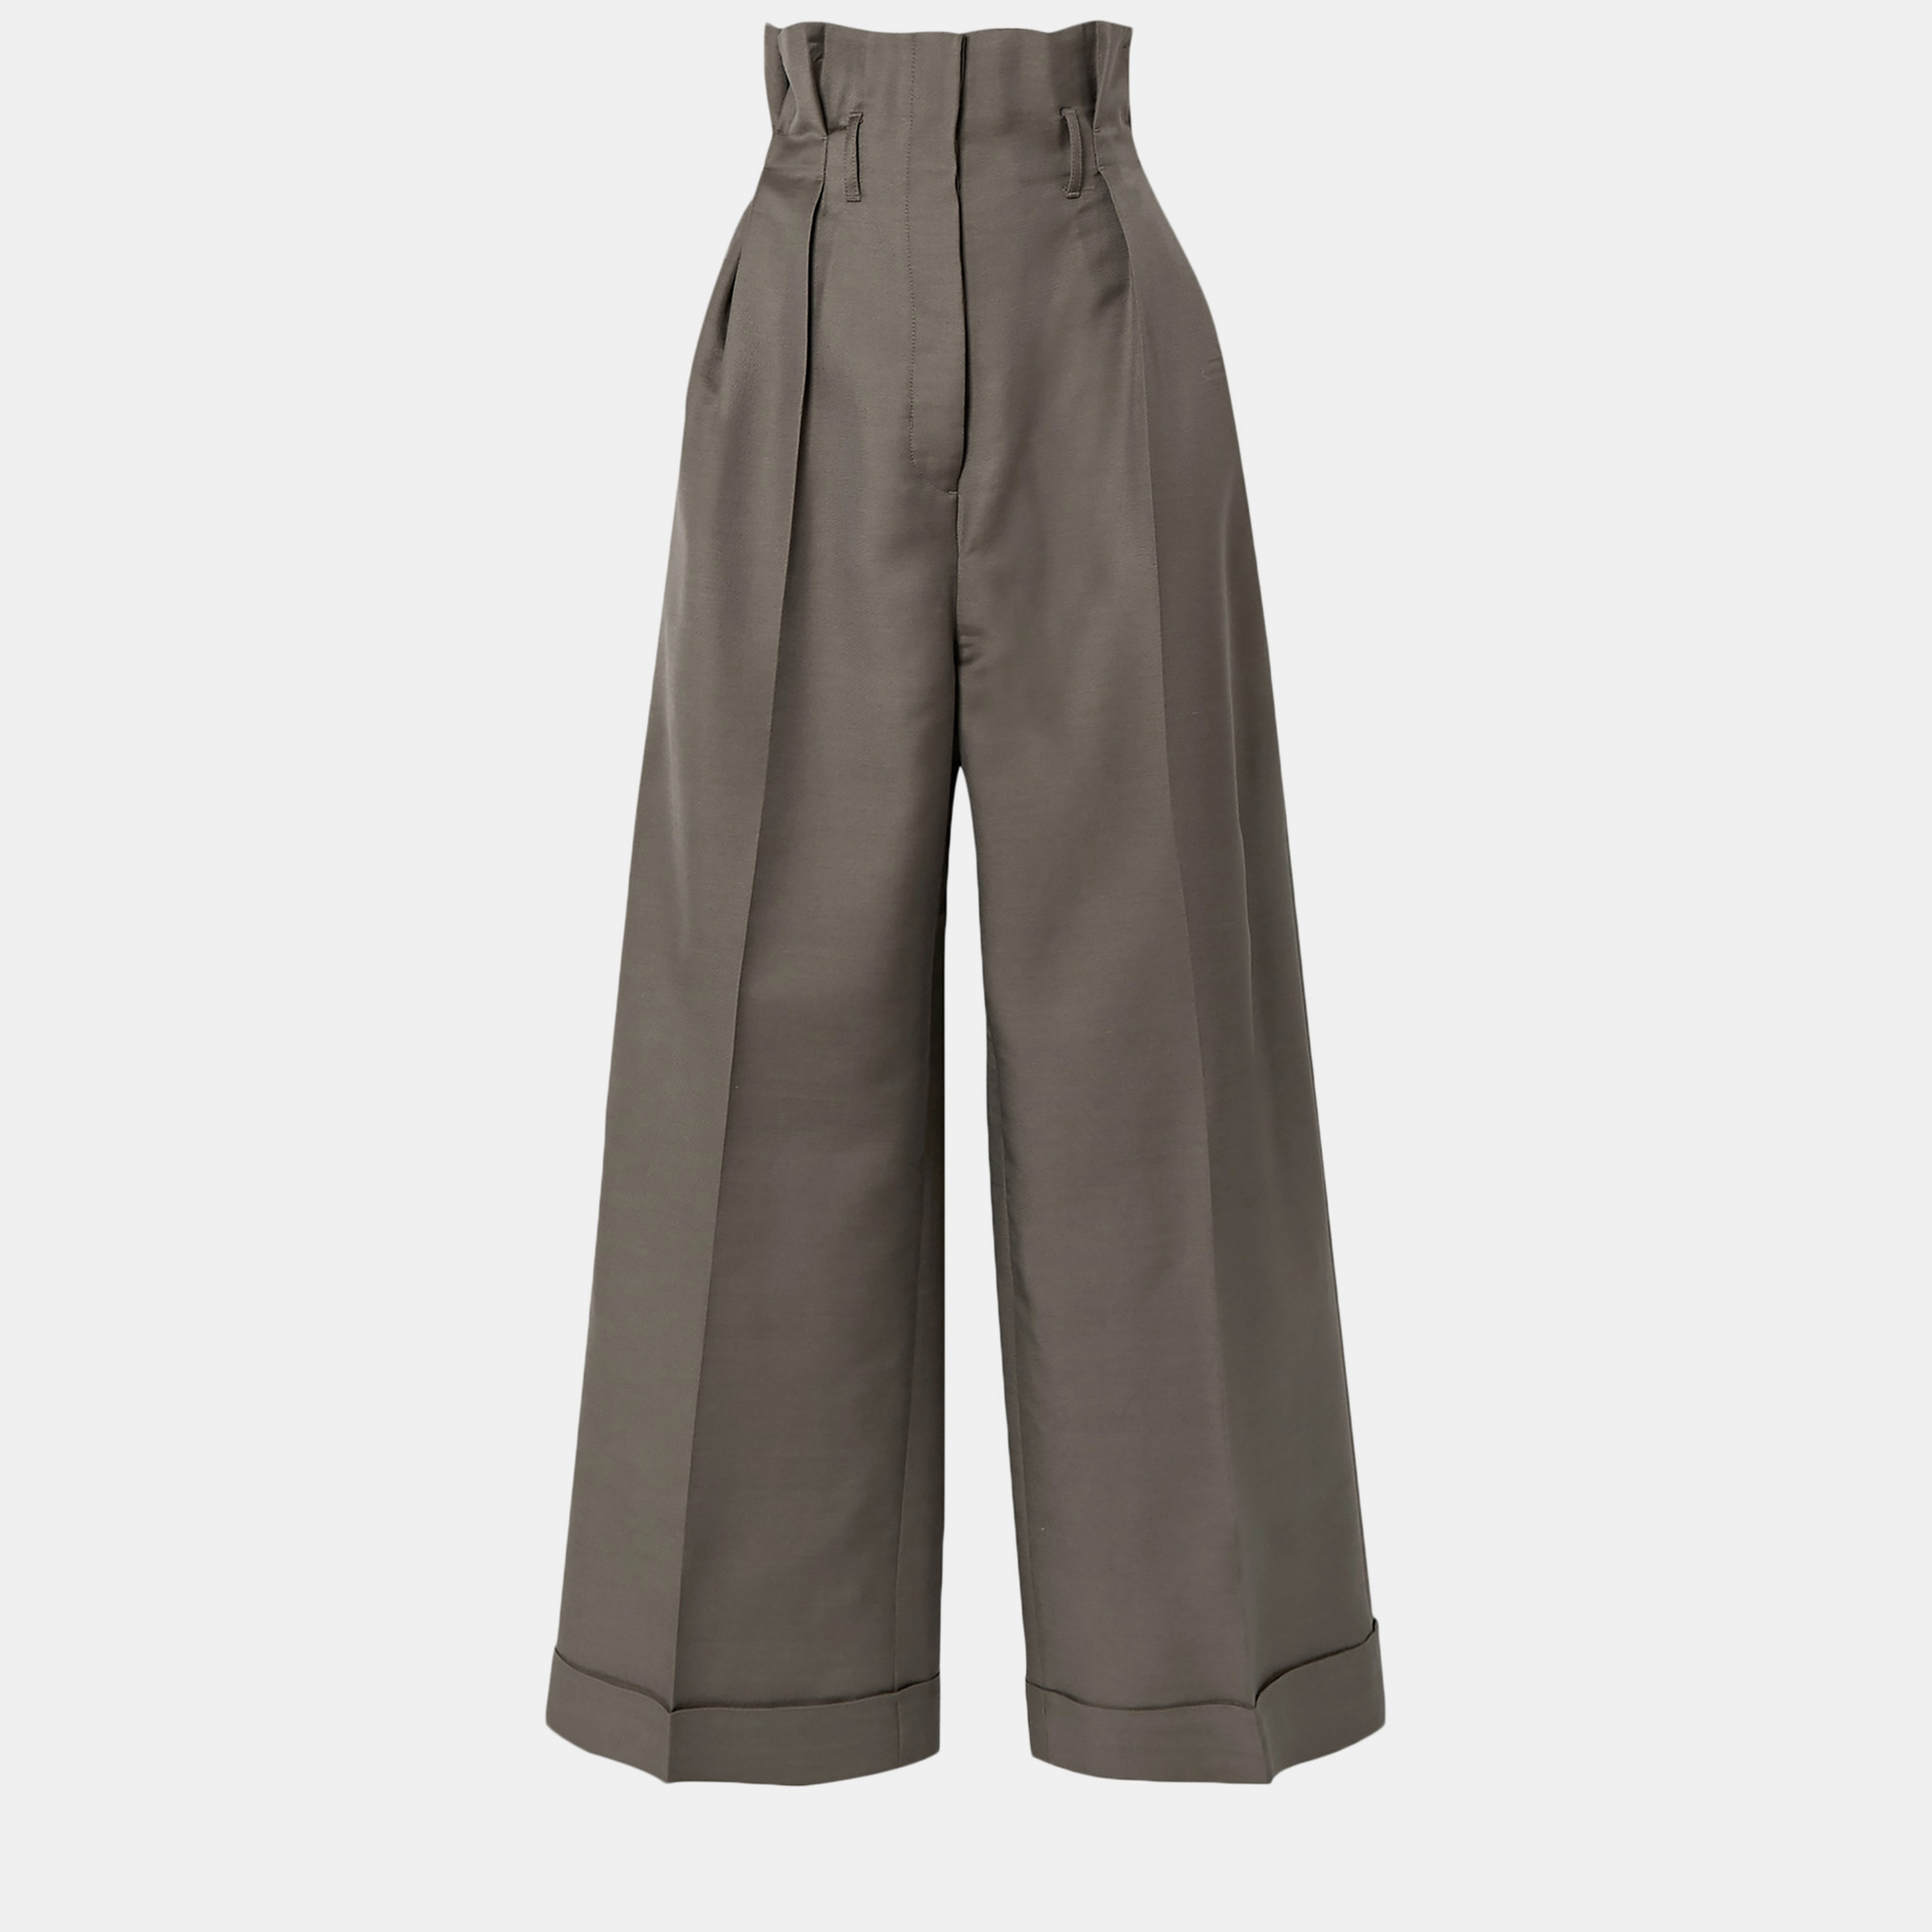 Acne studios brown wool-blend wide-leg pants xs (eu 34)